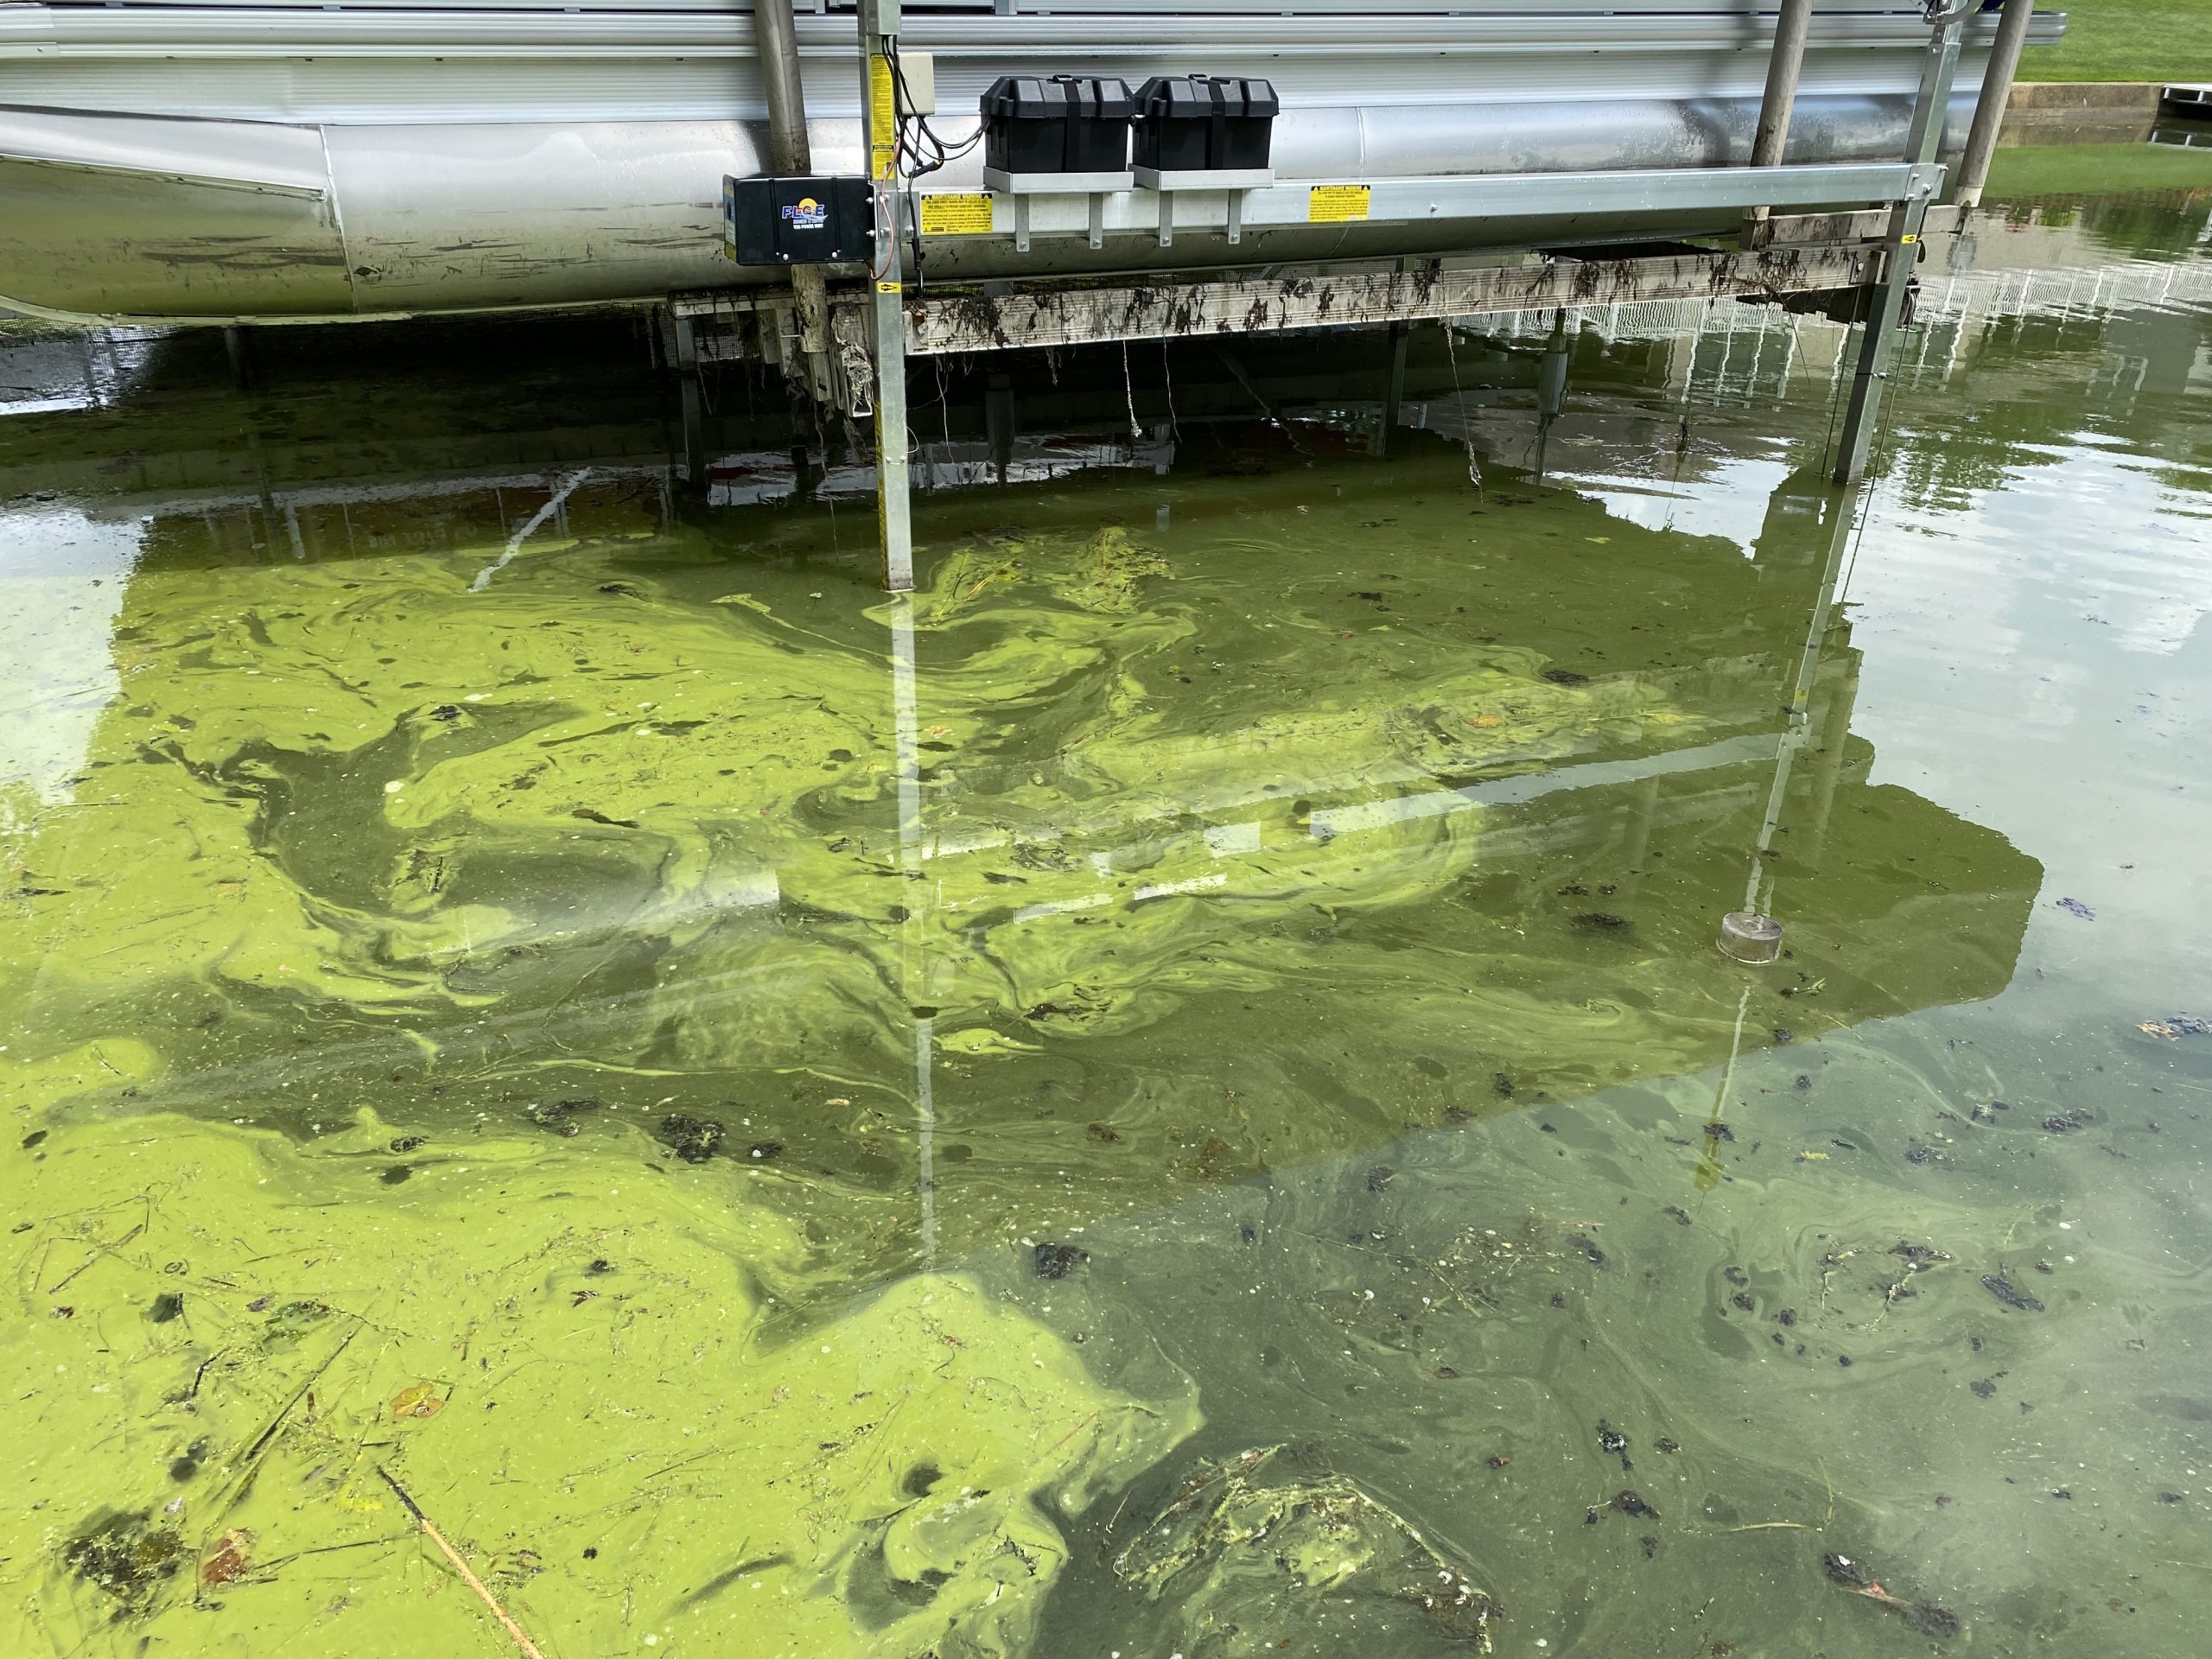 How to identify Blue-green algae